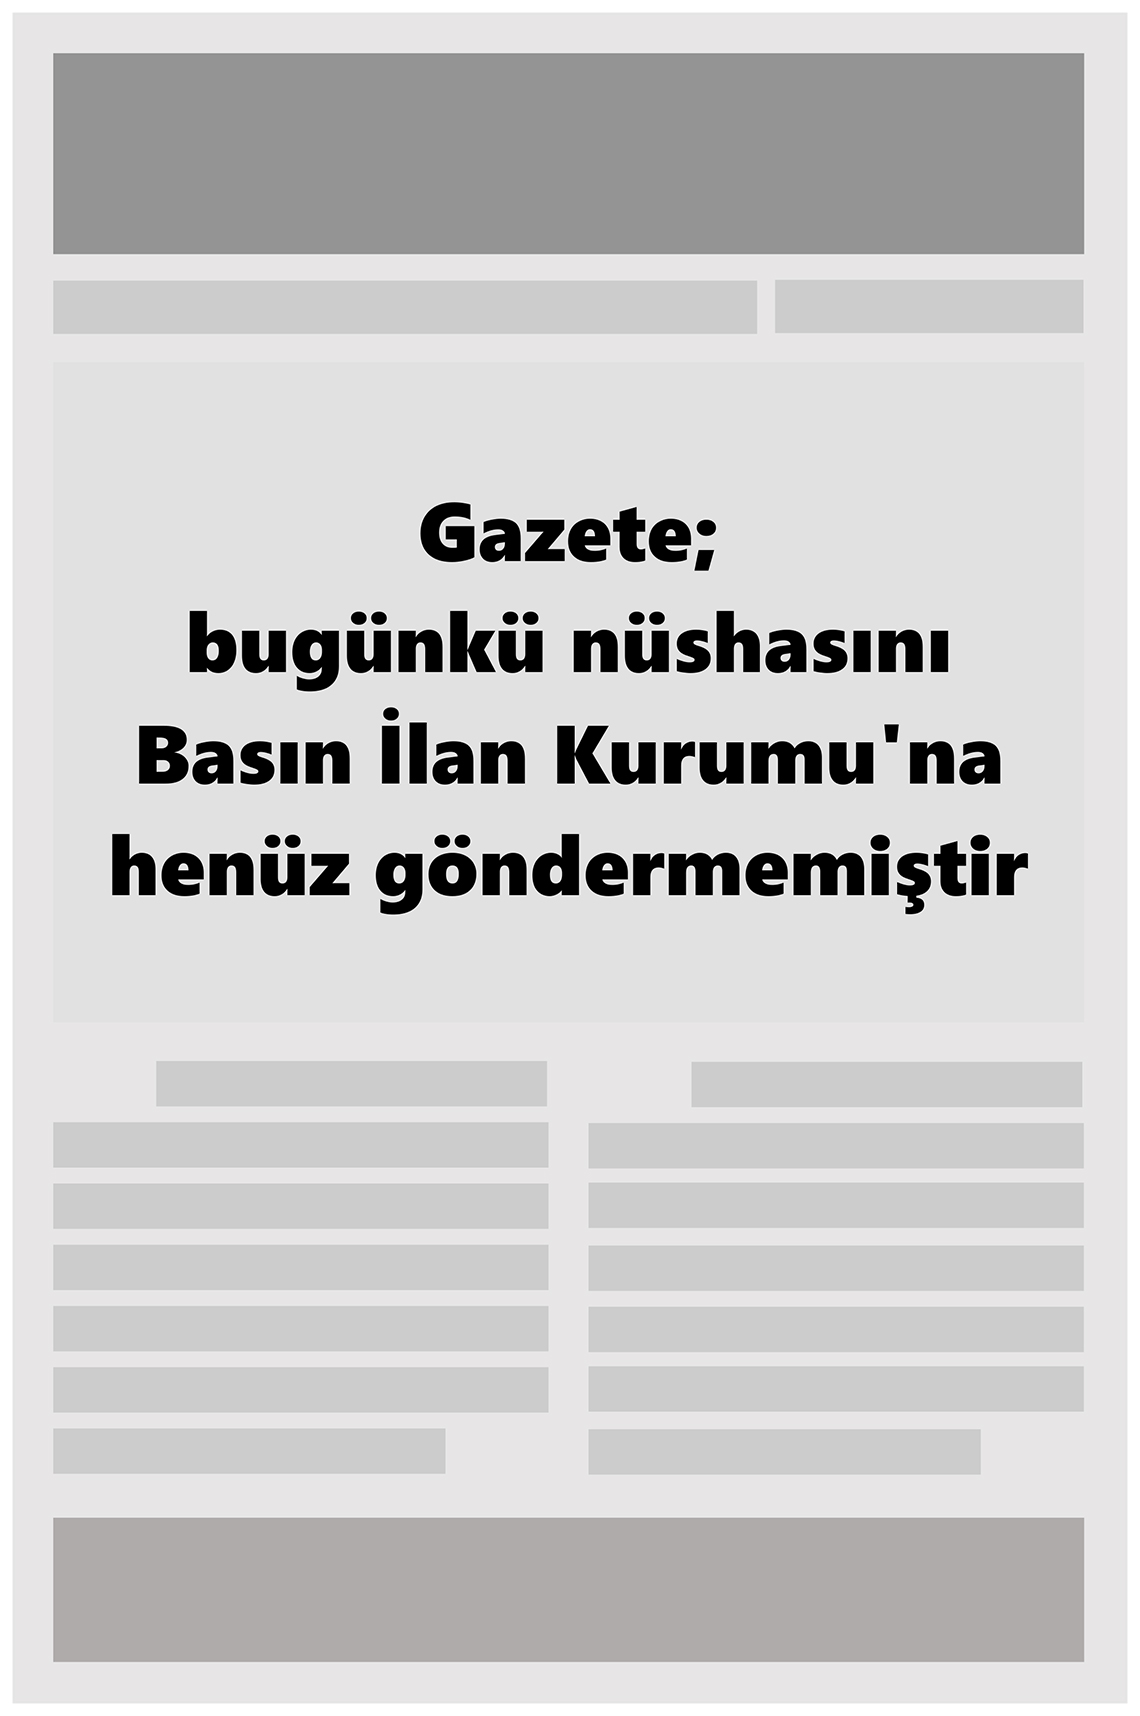 14 Ocak 2022 Sarıkaya Yöre Haber Gazete Manşeti